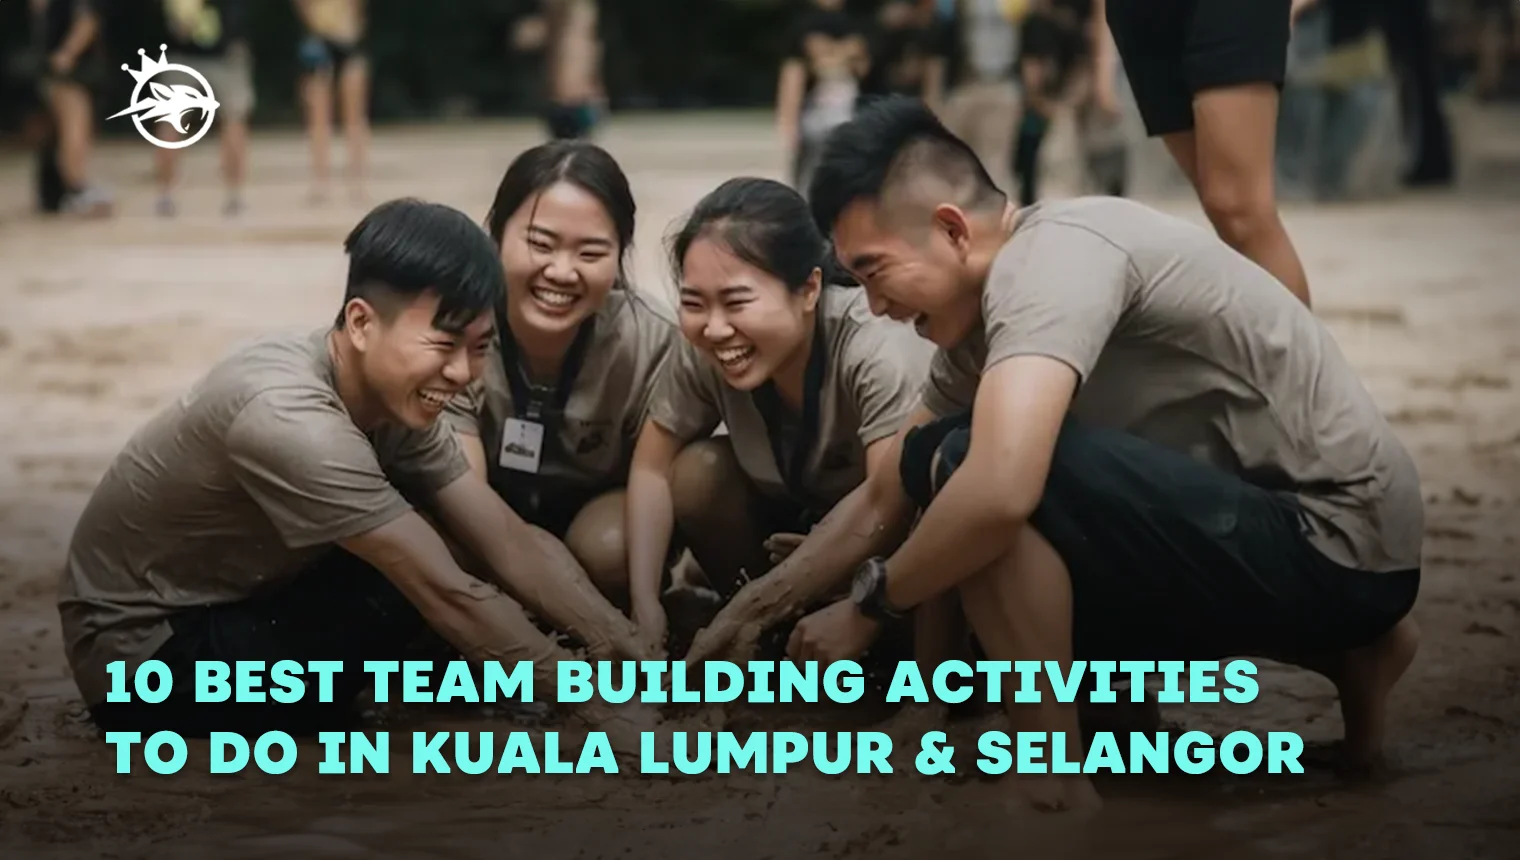 10 Best Team Building Activities to do in Kuala Lumpur & Selangor